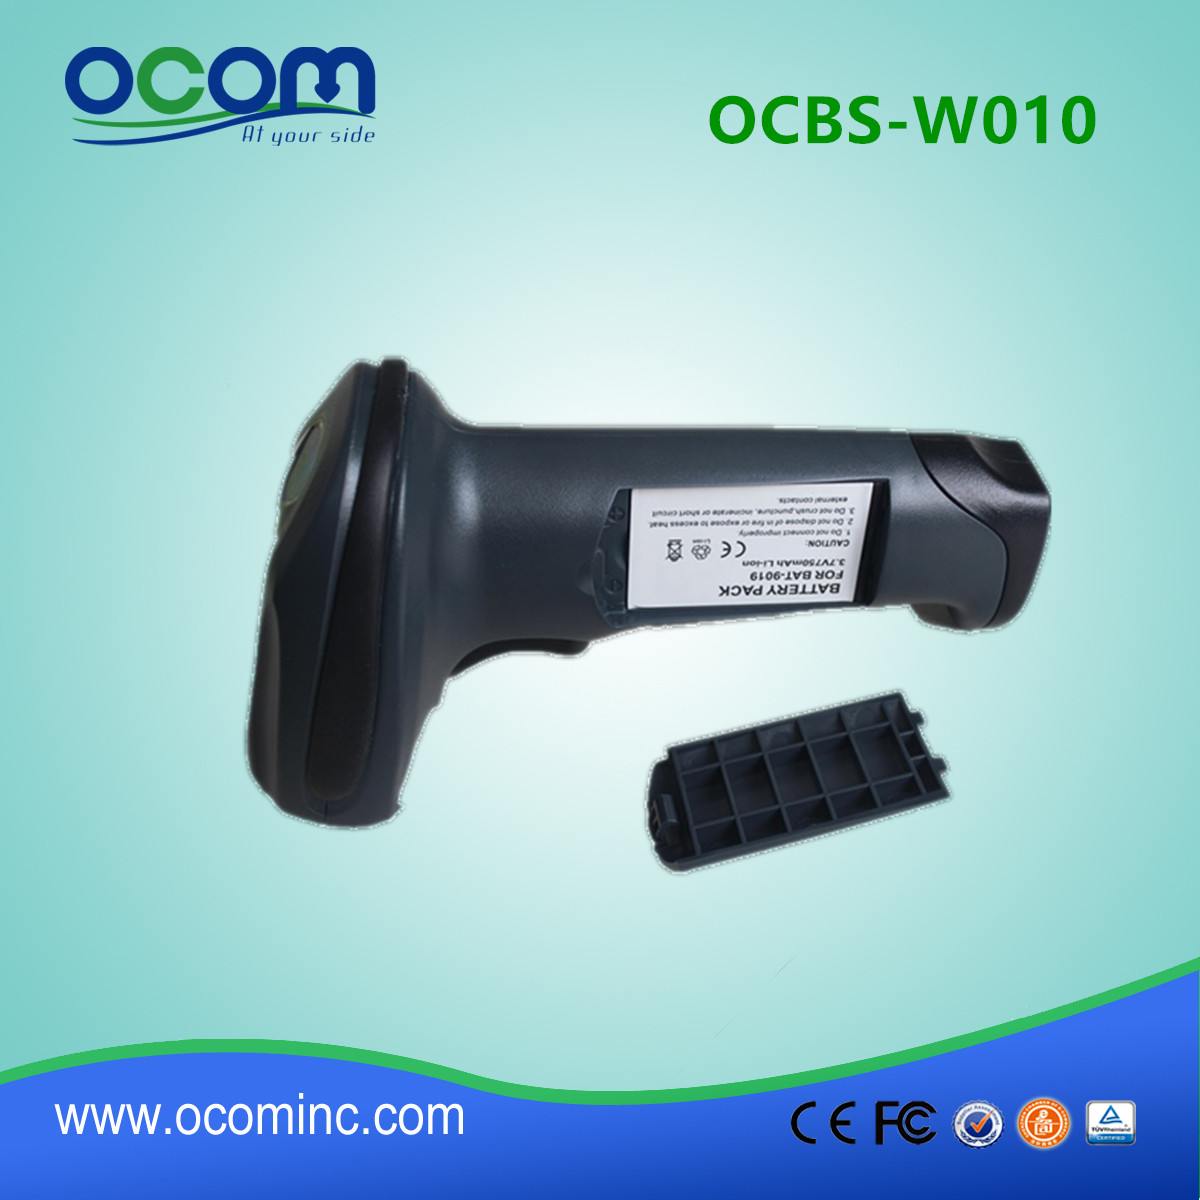 OCBS-W010 Warehouse Schnurloser 1d-Laser-Barcode-Handscanner